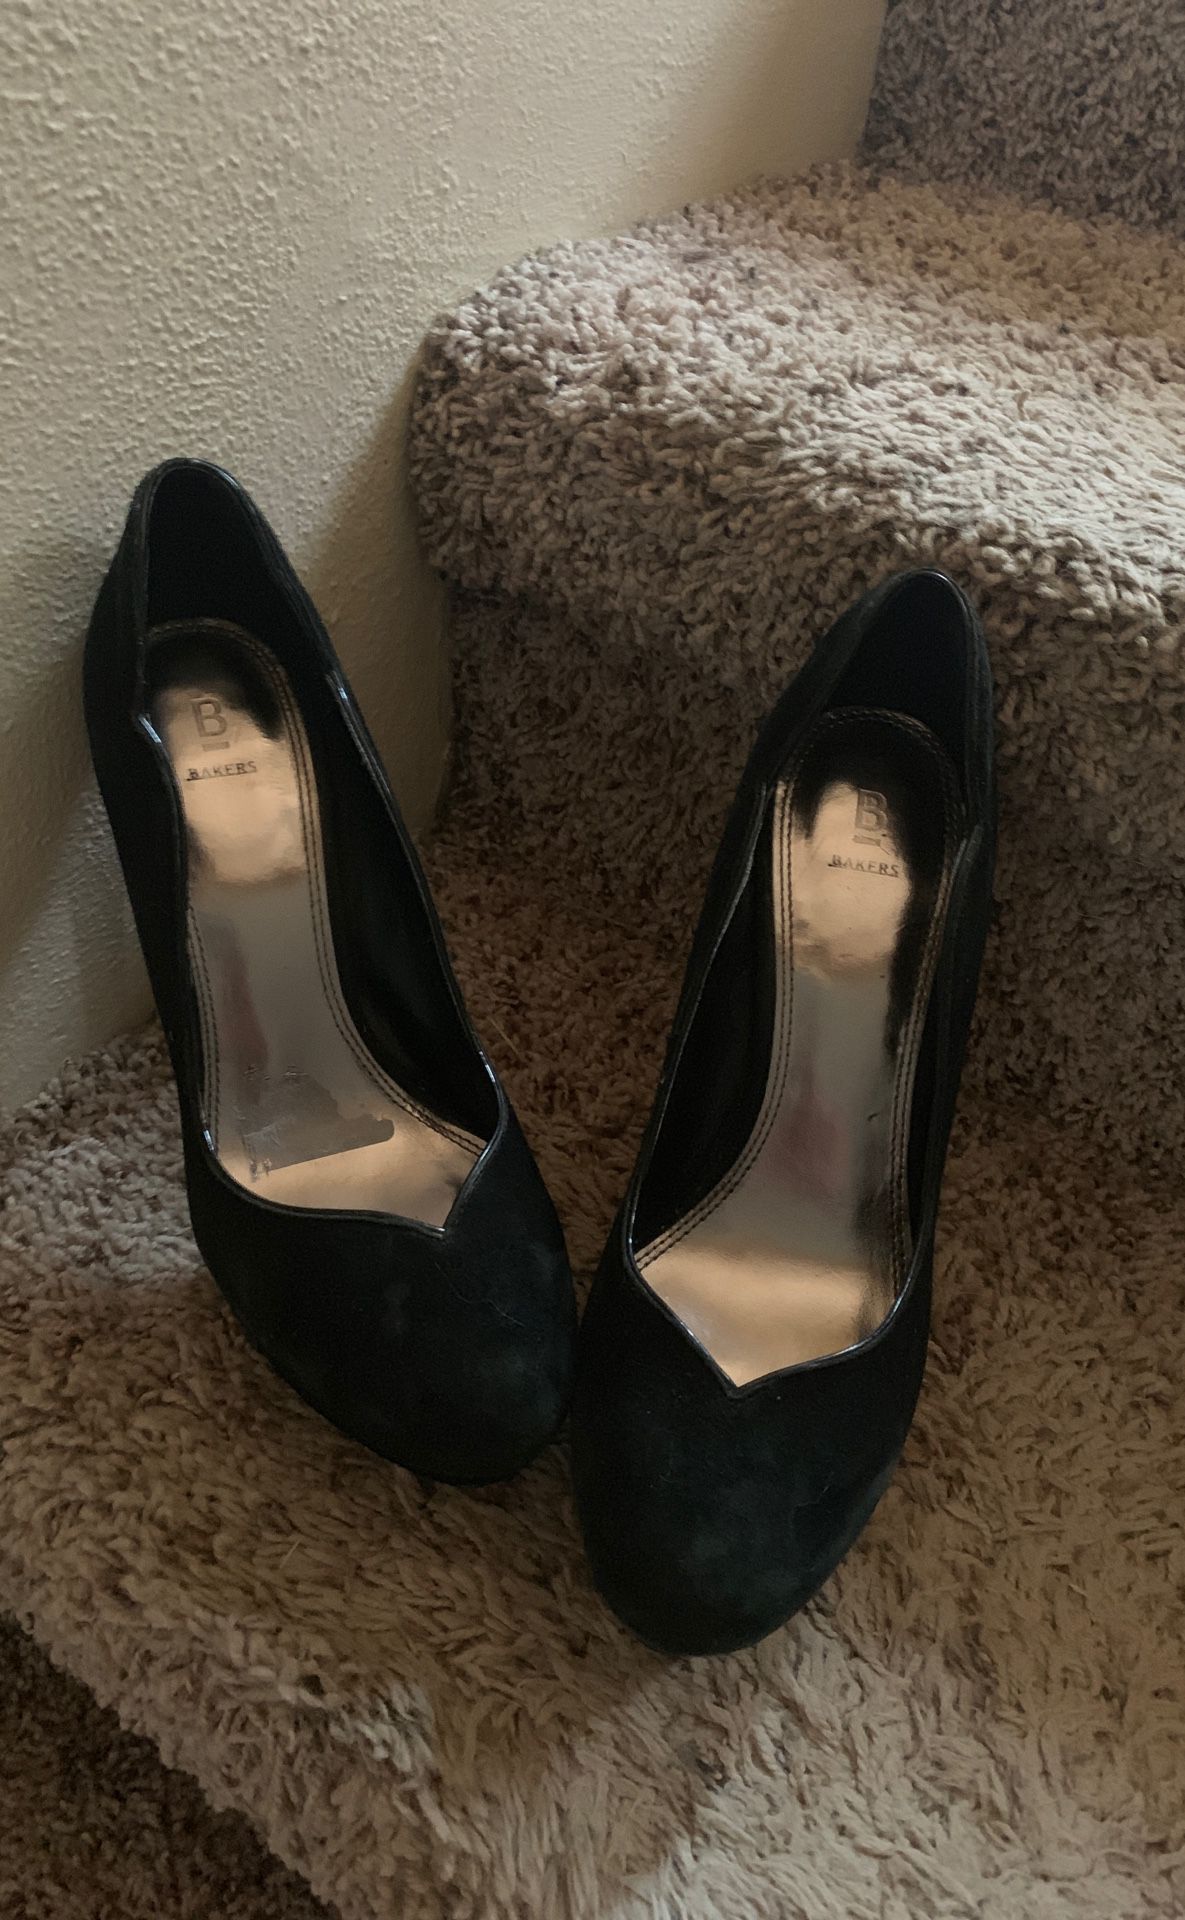 Bakers heels size 7